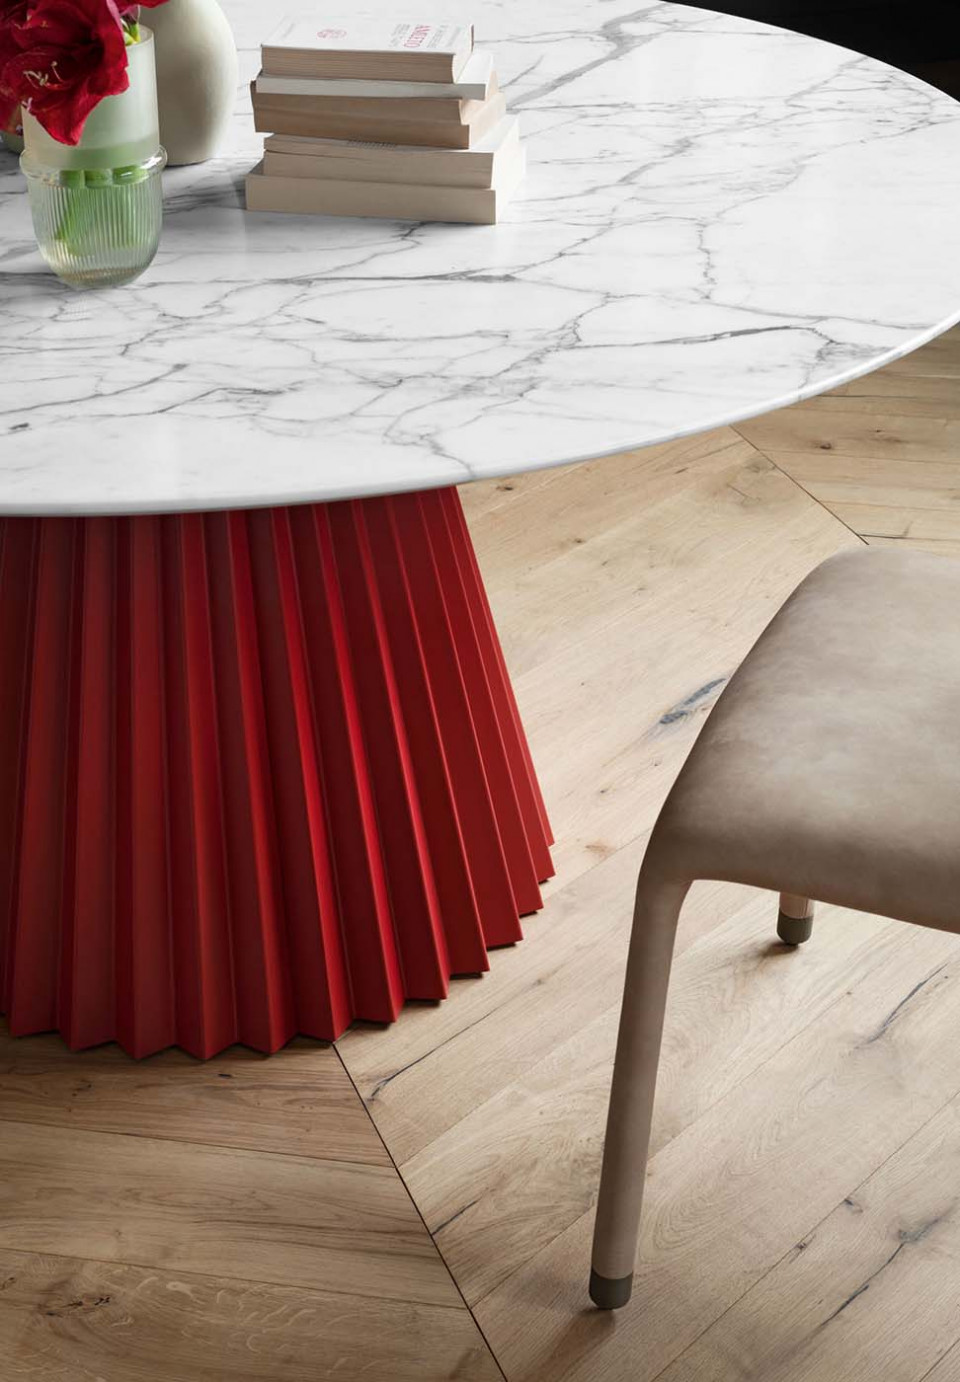 Table Plissé design Paola Navone, piètement en acier rouge, plateau en marbre blanc